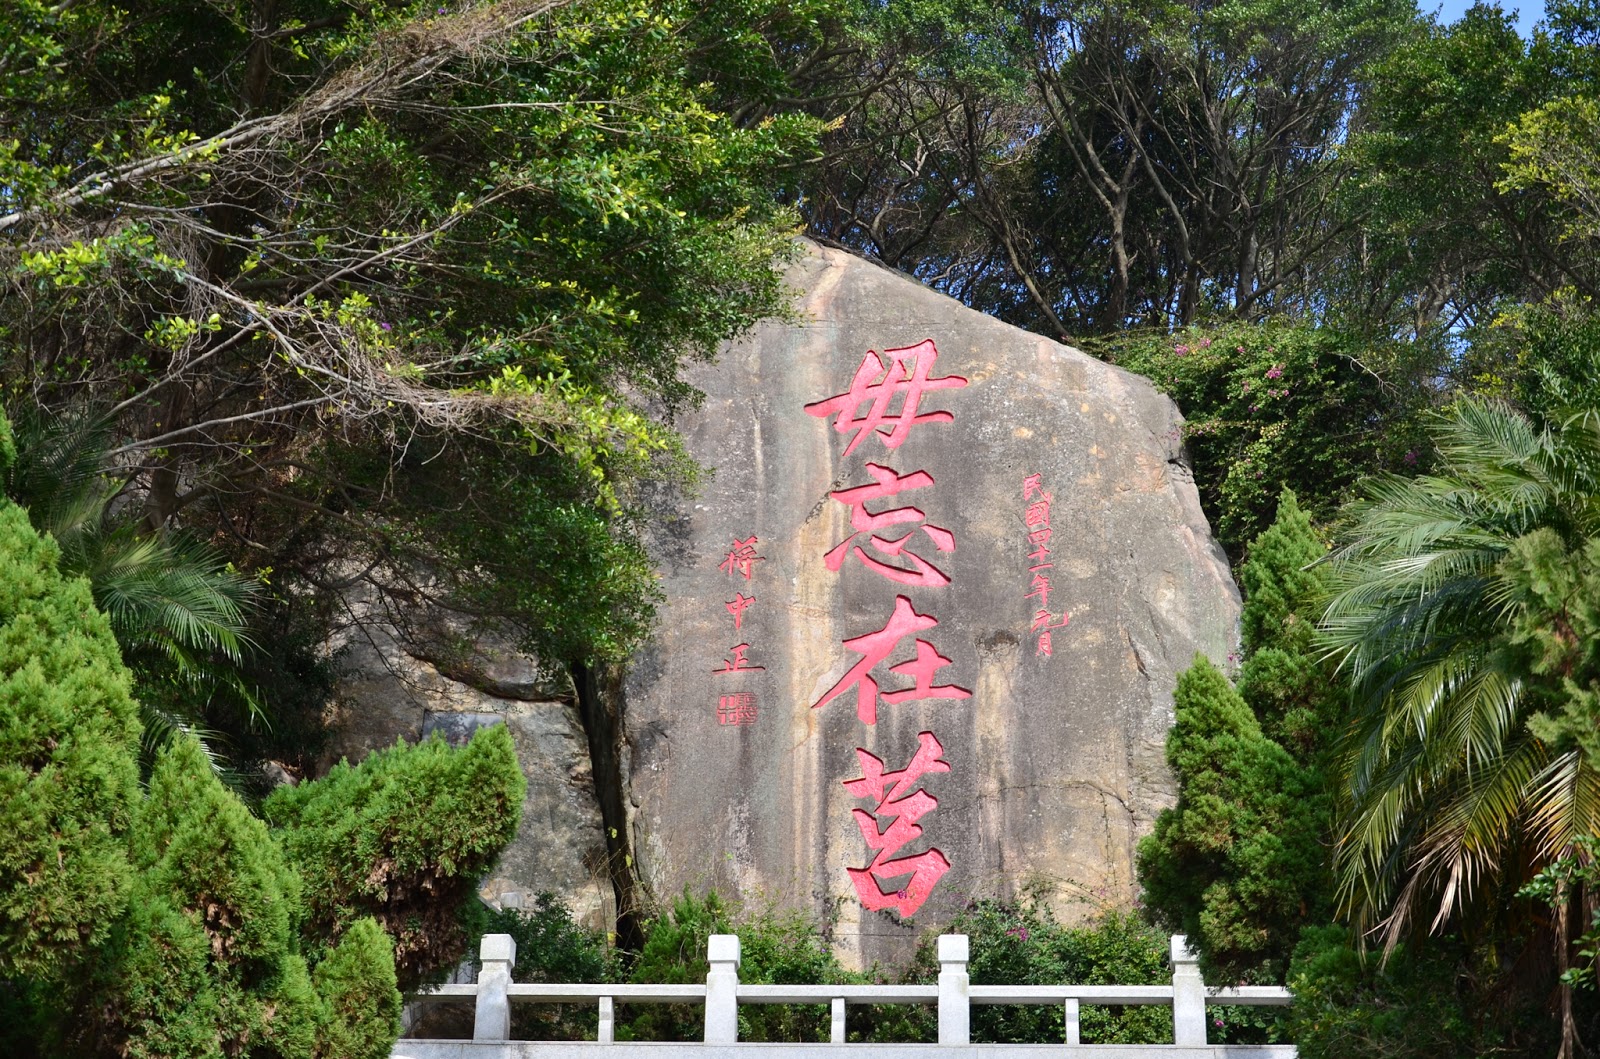 影。像。生。活: 金門。毋忘在莒勒石“Wu Wang Zai Jyu” Inscription